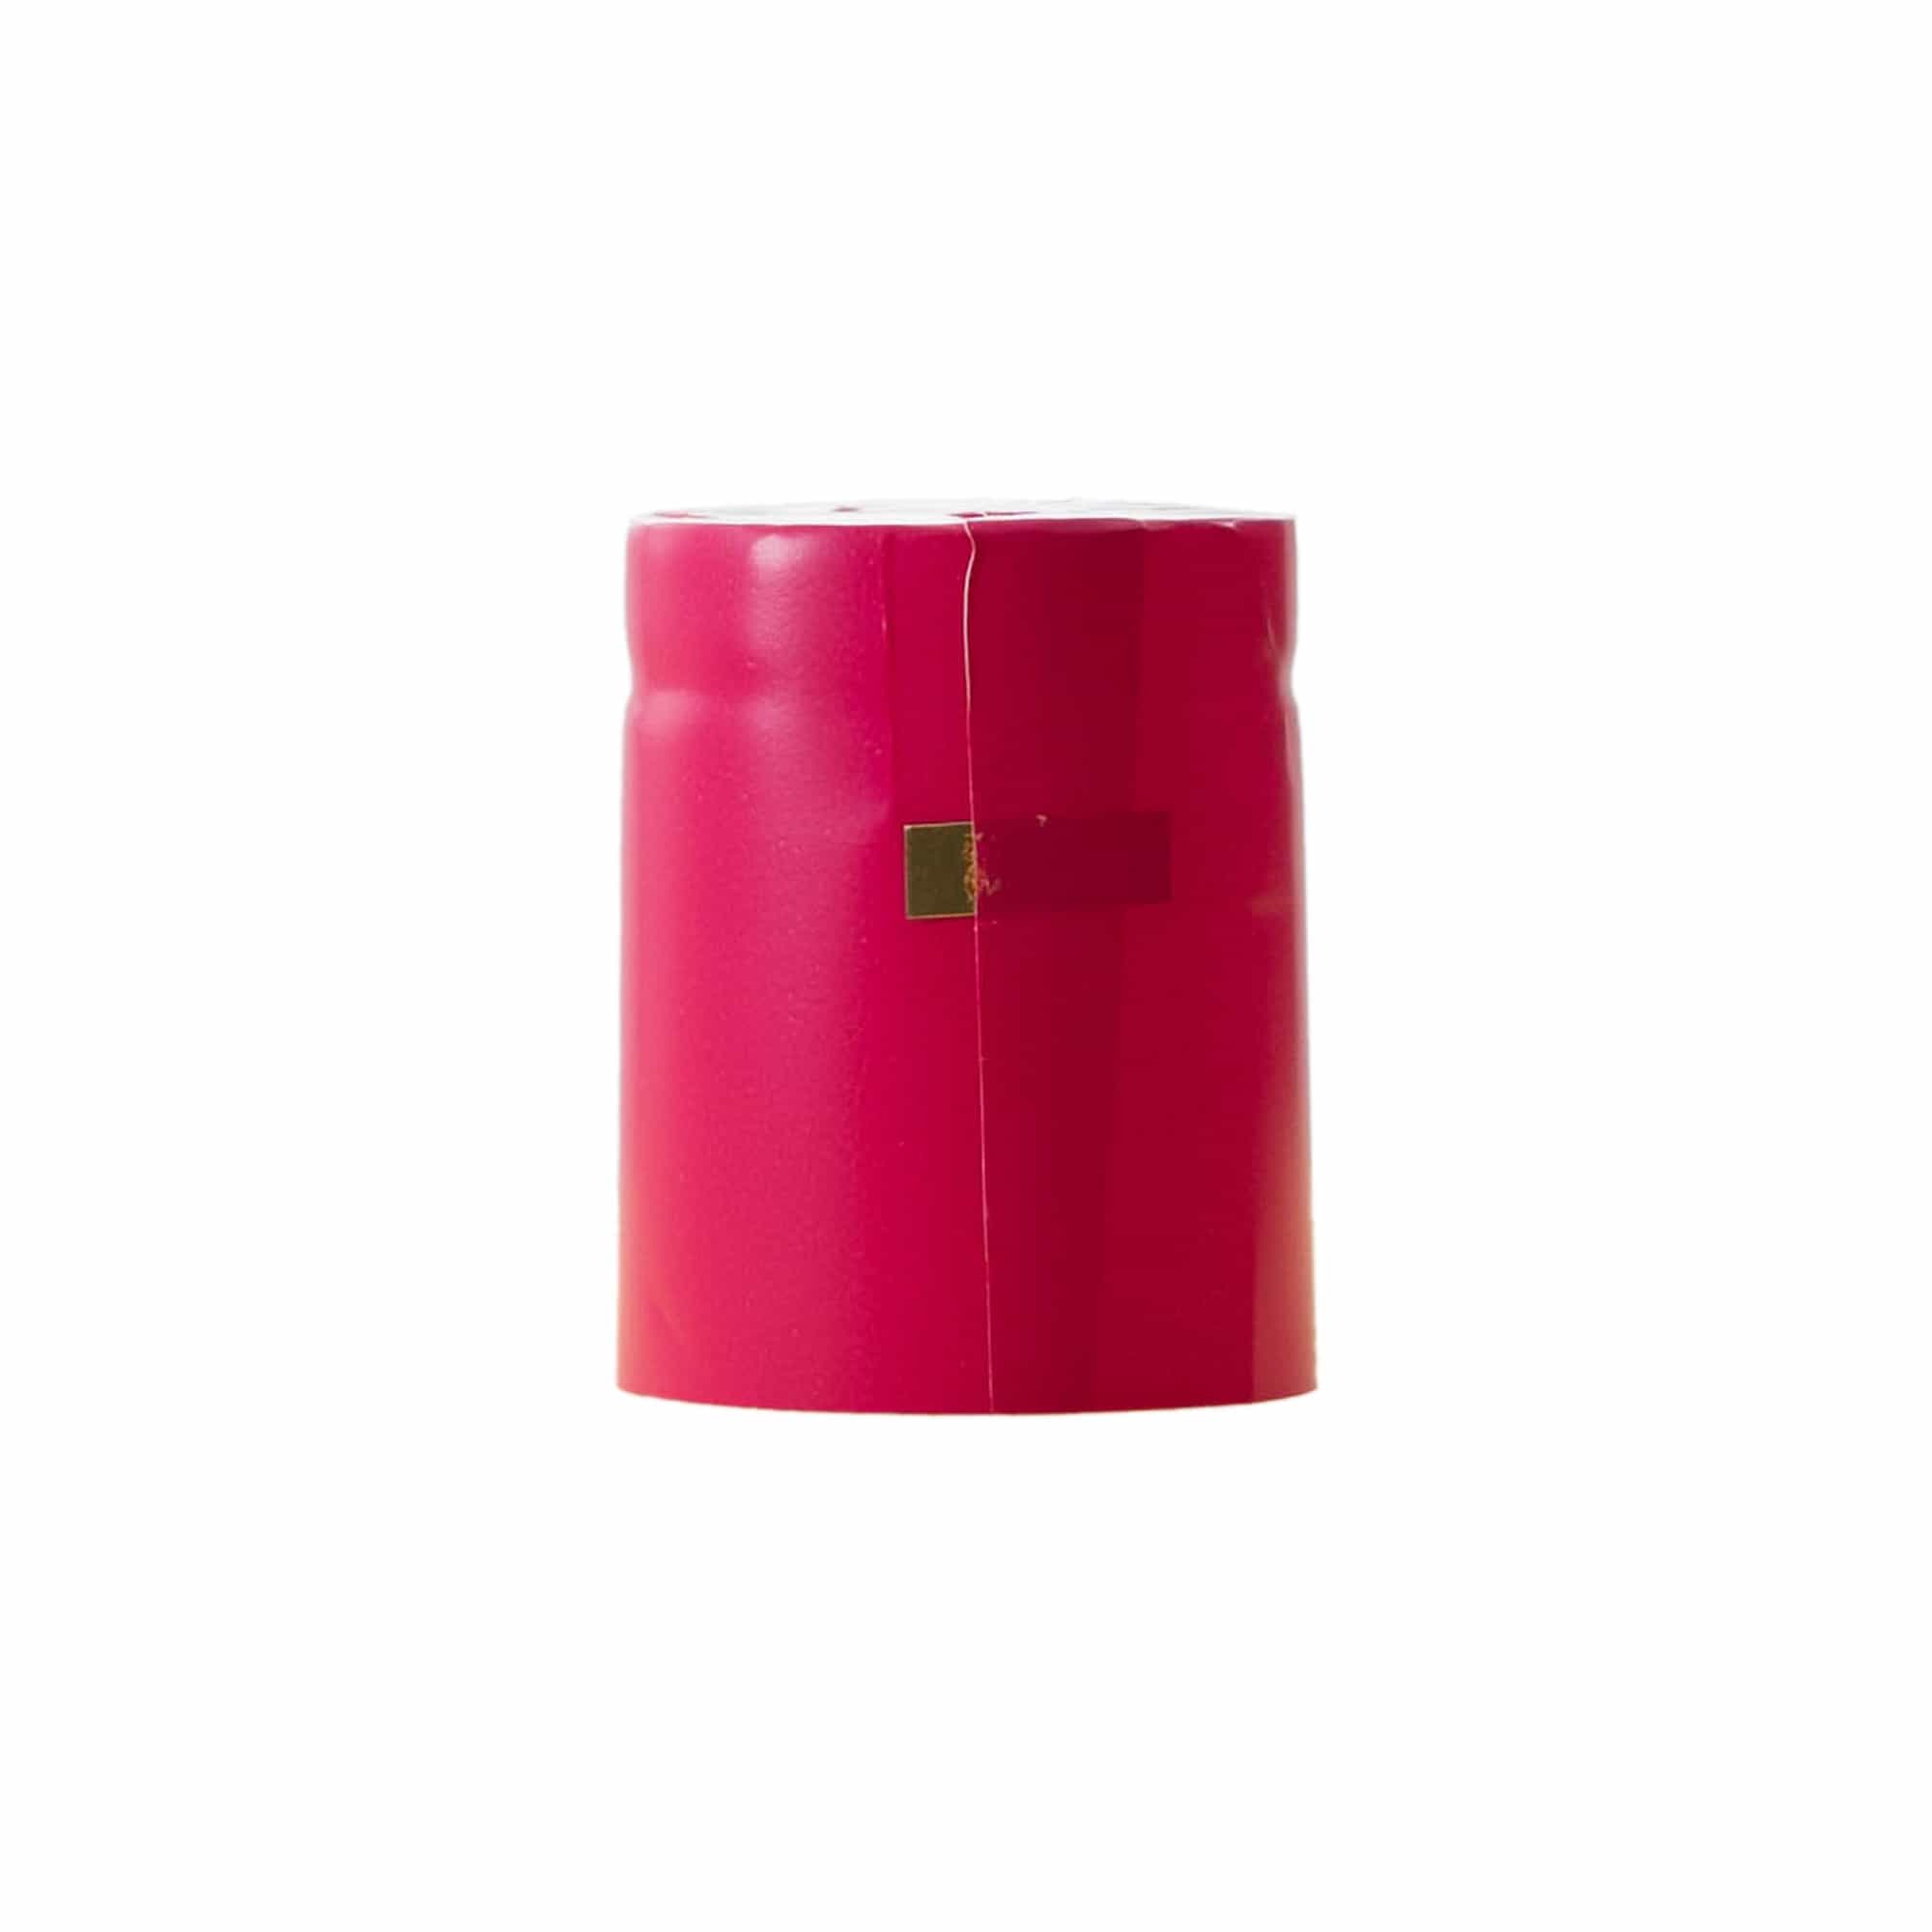 Cápsula termoencogible 32x41, plástico de PVC, rosa fucsia